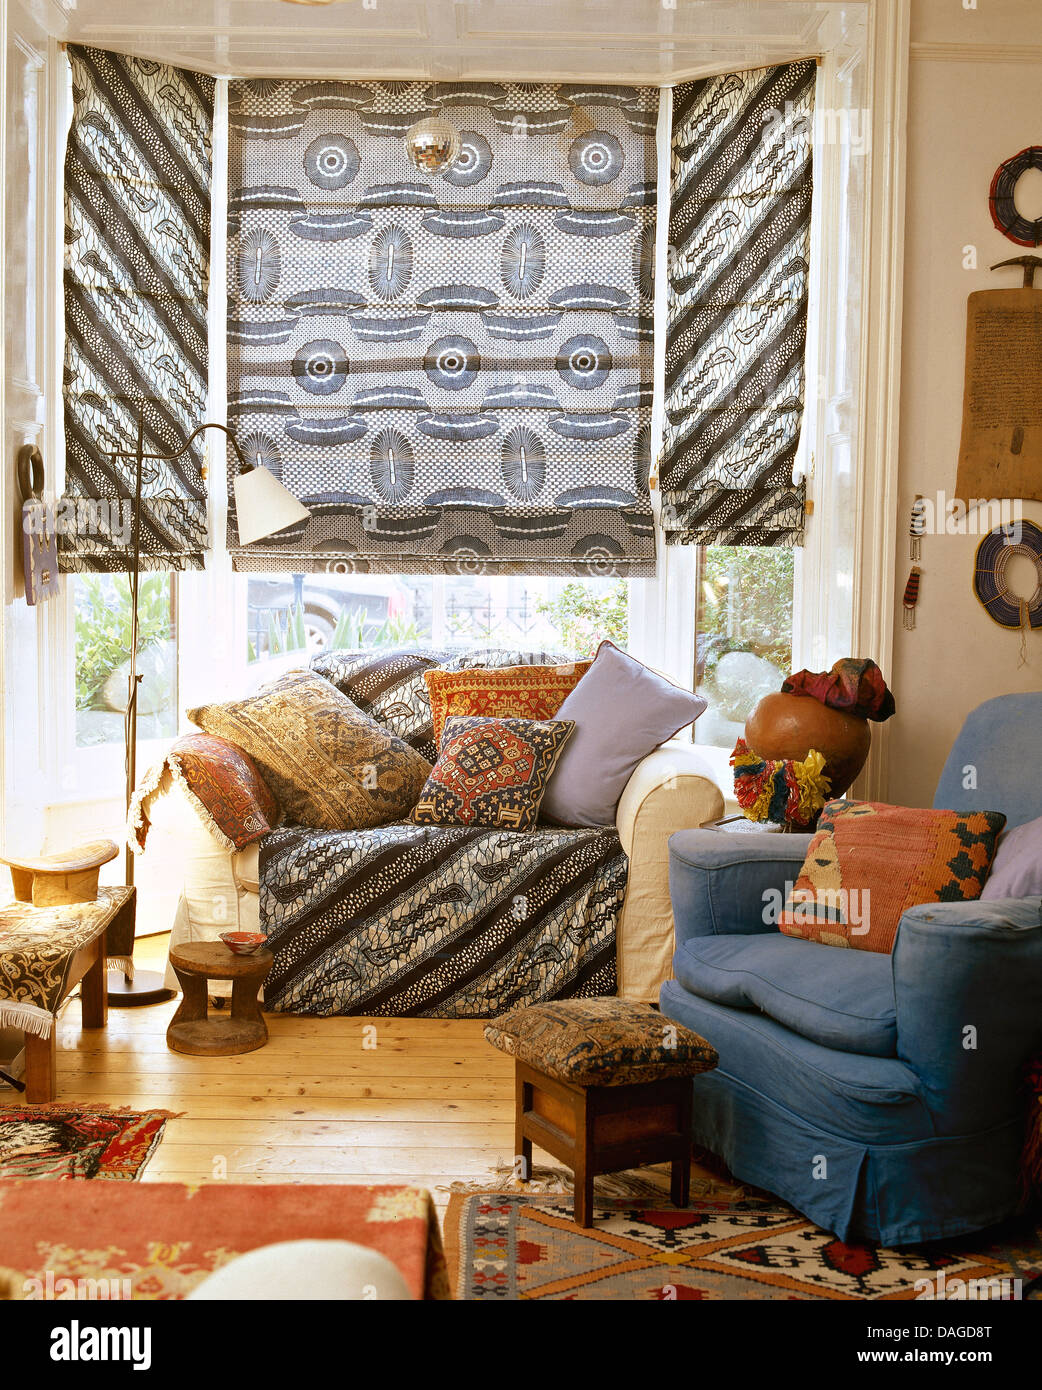 Telas grises ciego romano en bahía ventana encima de un sofá con cojines  apilados en la sala de estar con sillones azules y alfombras étnicas  Fotografía de stock - Alamy